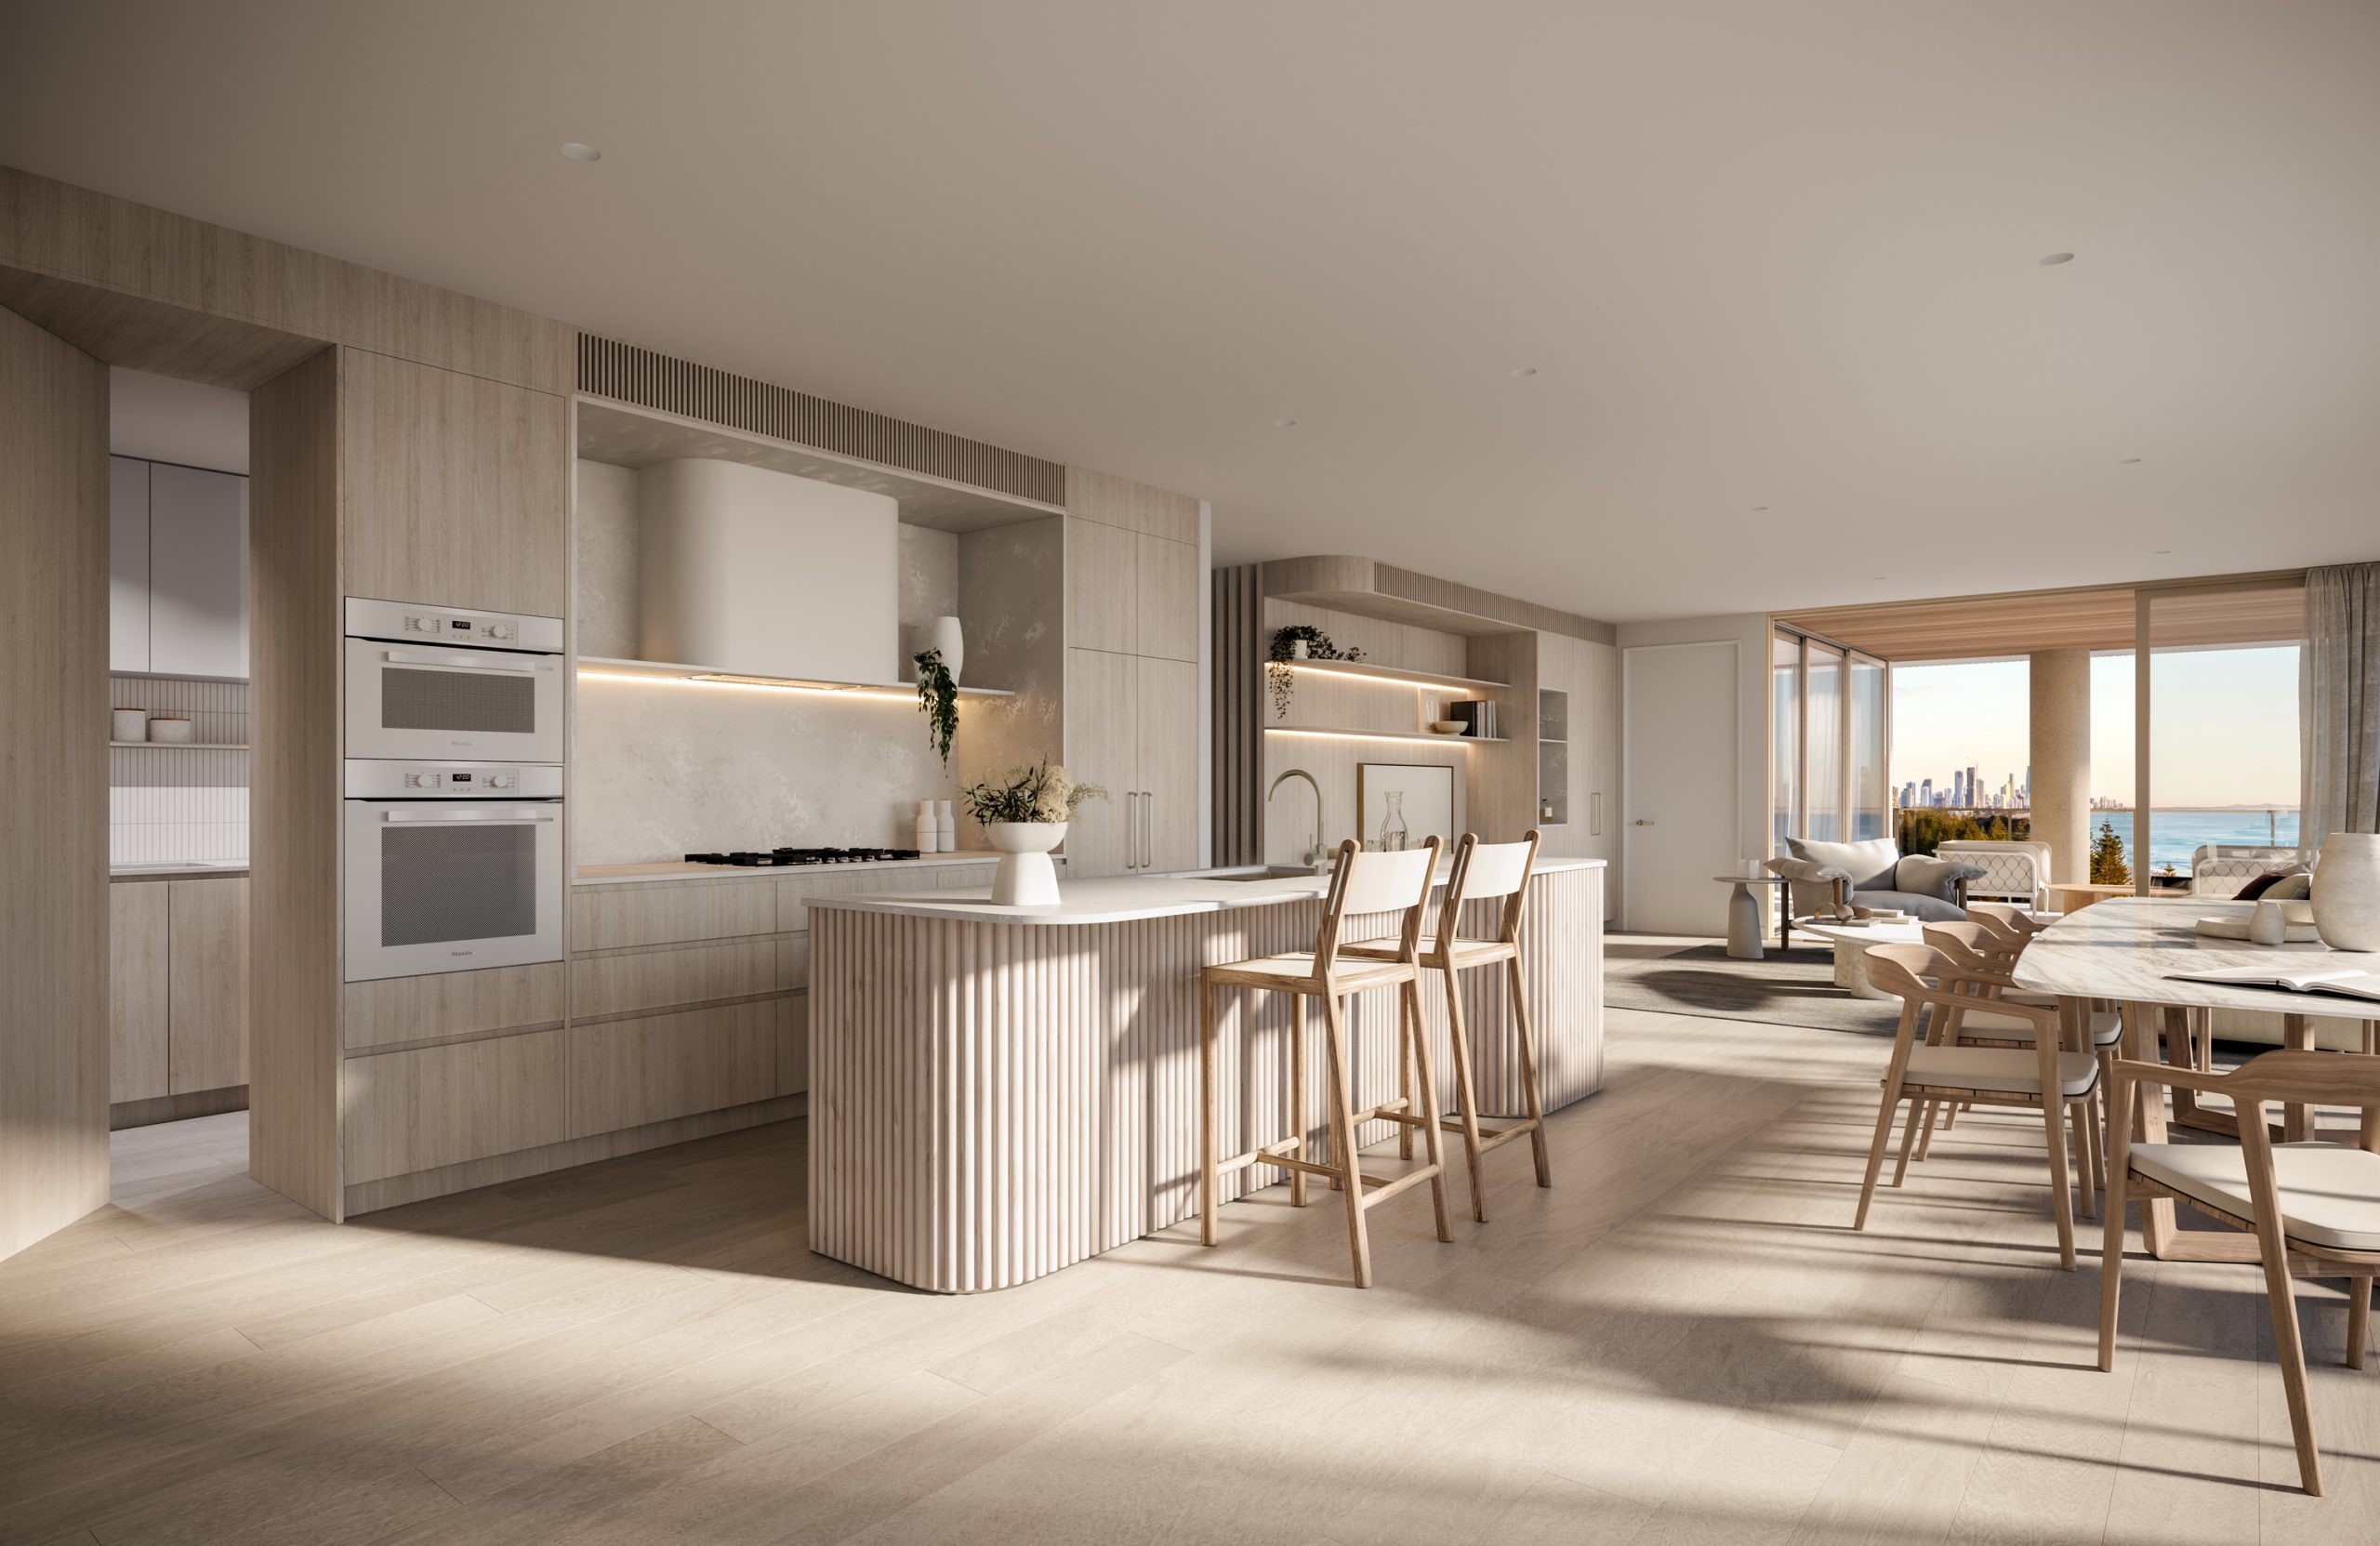 fkd-studio-architecture-render-augusta-first-ave-interior-queensland-living-dniing-kitchen